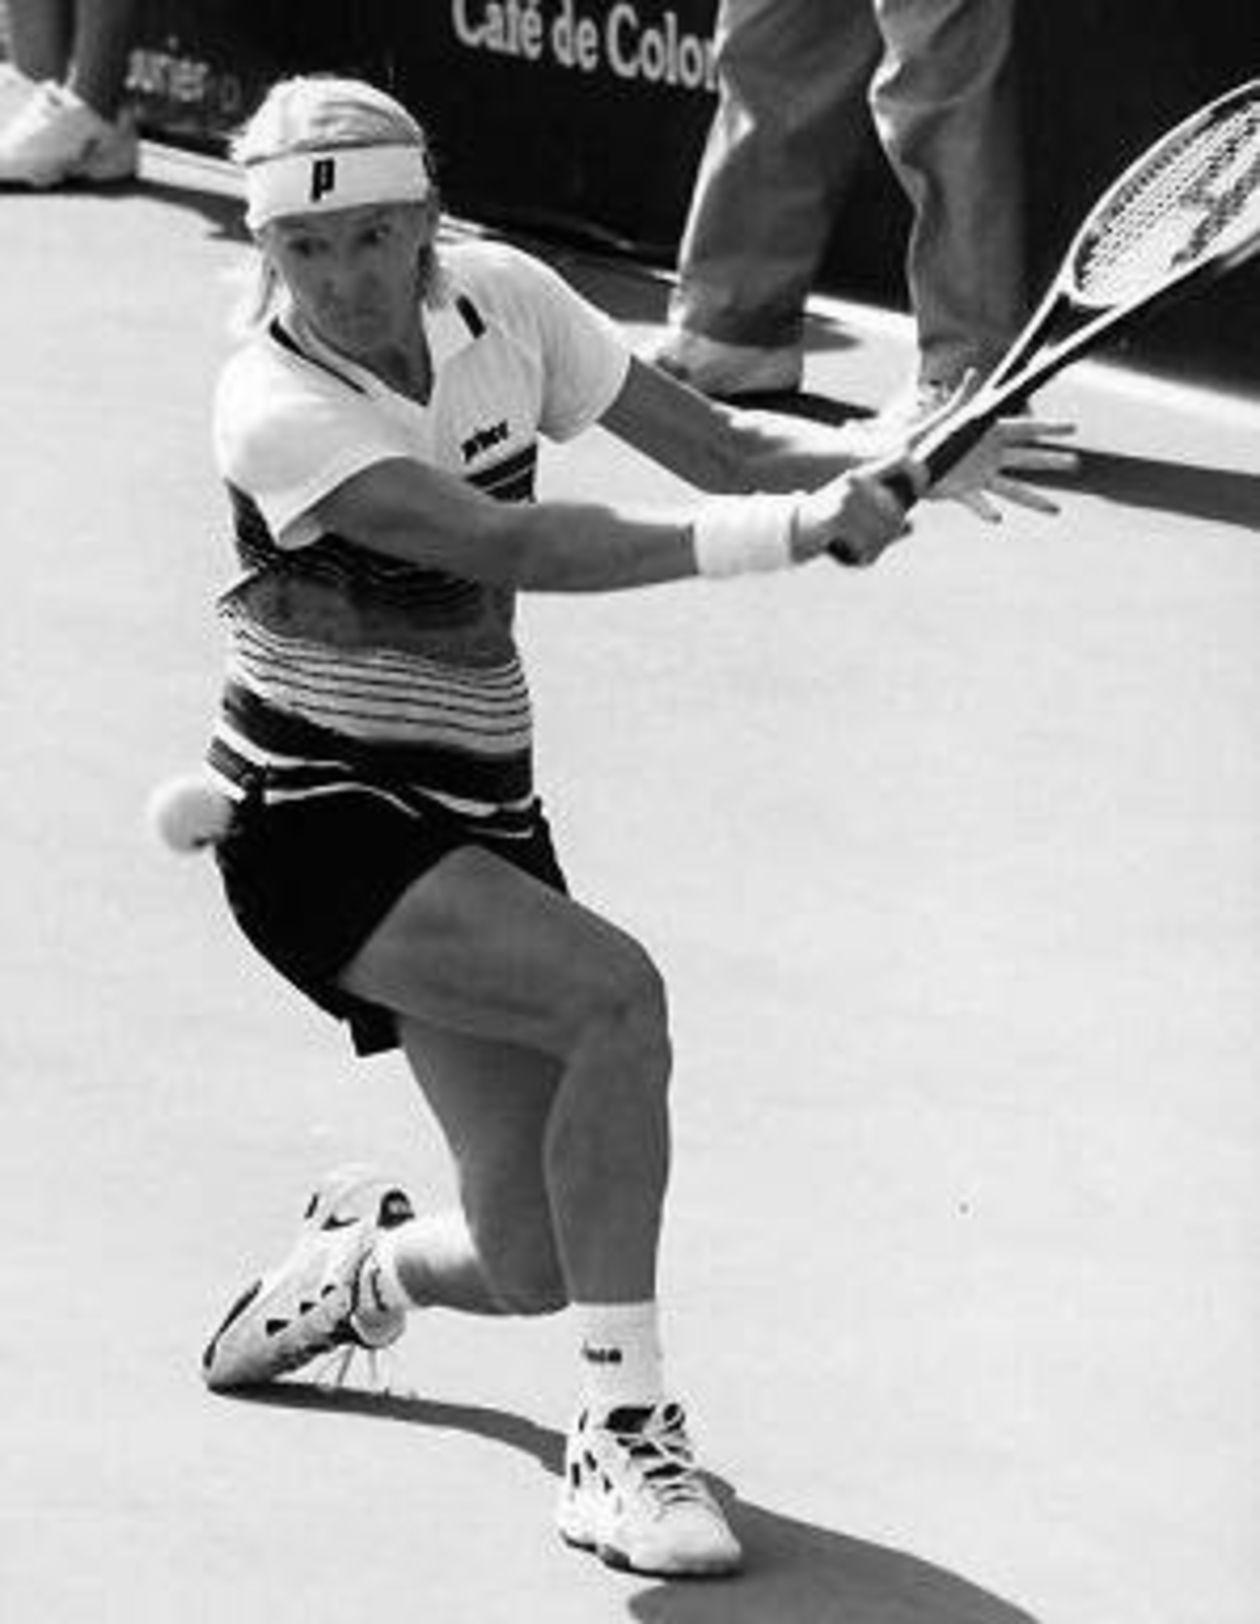  <p><strong>Listopad 2017</strong></p>
<p><strong>Jana Novotna</strong></p>
<p>Wybitna czeska tenisistka zmarła w wieku 49 lat po ciężkiej chorobie. Była wiceliderka rankingu WTA wygrała Wimbledon w 1998 roku, była także trzykrotną medalistką igrzysk olimpijskich. Przez kilka lat była uznawana za najlepszą deblistkę świata.</p>
<p>Urodzona w Brnie zawodniczka miała na koncie 24 zwycięstwa w singlowych turniejach WTA. W deblu triumfowała 76-krotnie. W grze podw&oacute;jnej i mieszanej zwyciężyła 16-krotnie w imprezach wielkoszlemowych. W barwach Czechosłowacji zdobyła srebro olimpijskie w Seulu (1988) w deblu razem z Heleną Sukovą, a dla reprezentacji Czech wywalczyła na igrzyskach w Atlancie (1996) dwa medale - srebrny w deblu z Sukovą i brązowy w singlu.</p>
<p>Karierę zakończyła w 1999 roku. Sześć lat p&oacute;źniej została uhonorowana miejscem w Galerii Sław Tenisa.</p>